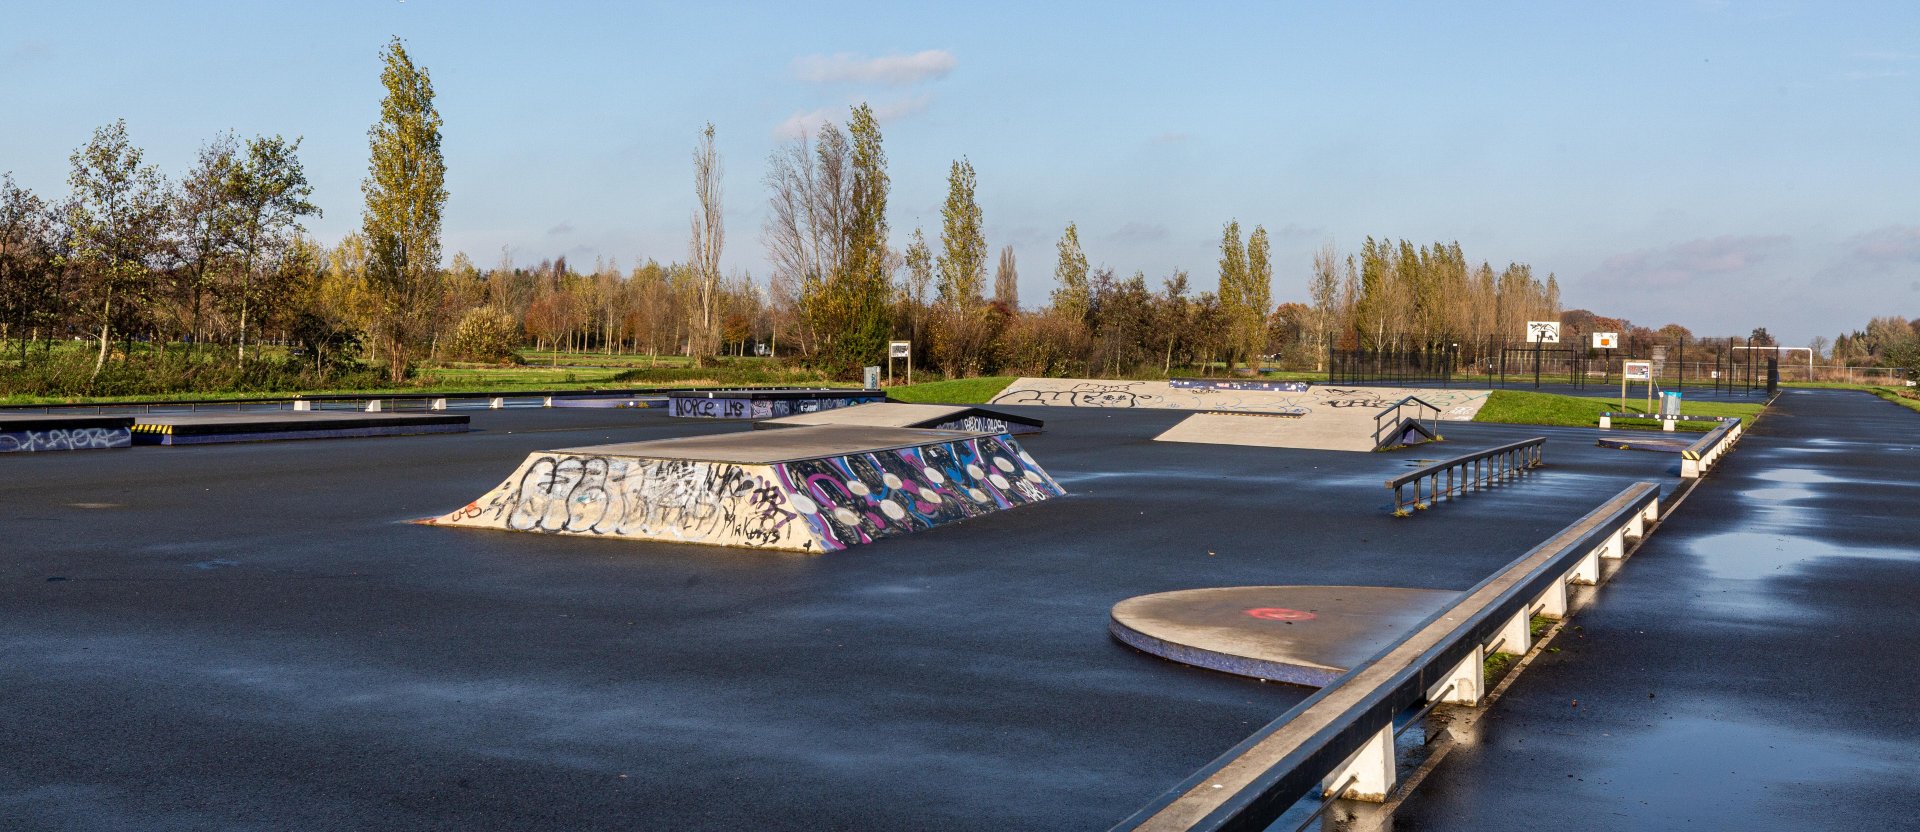 Overzichtsfoto van het skatepark Noorderpark Ruigenhoek